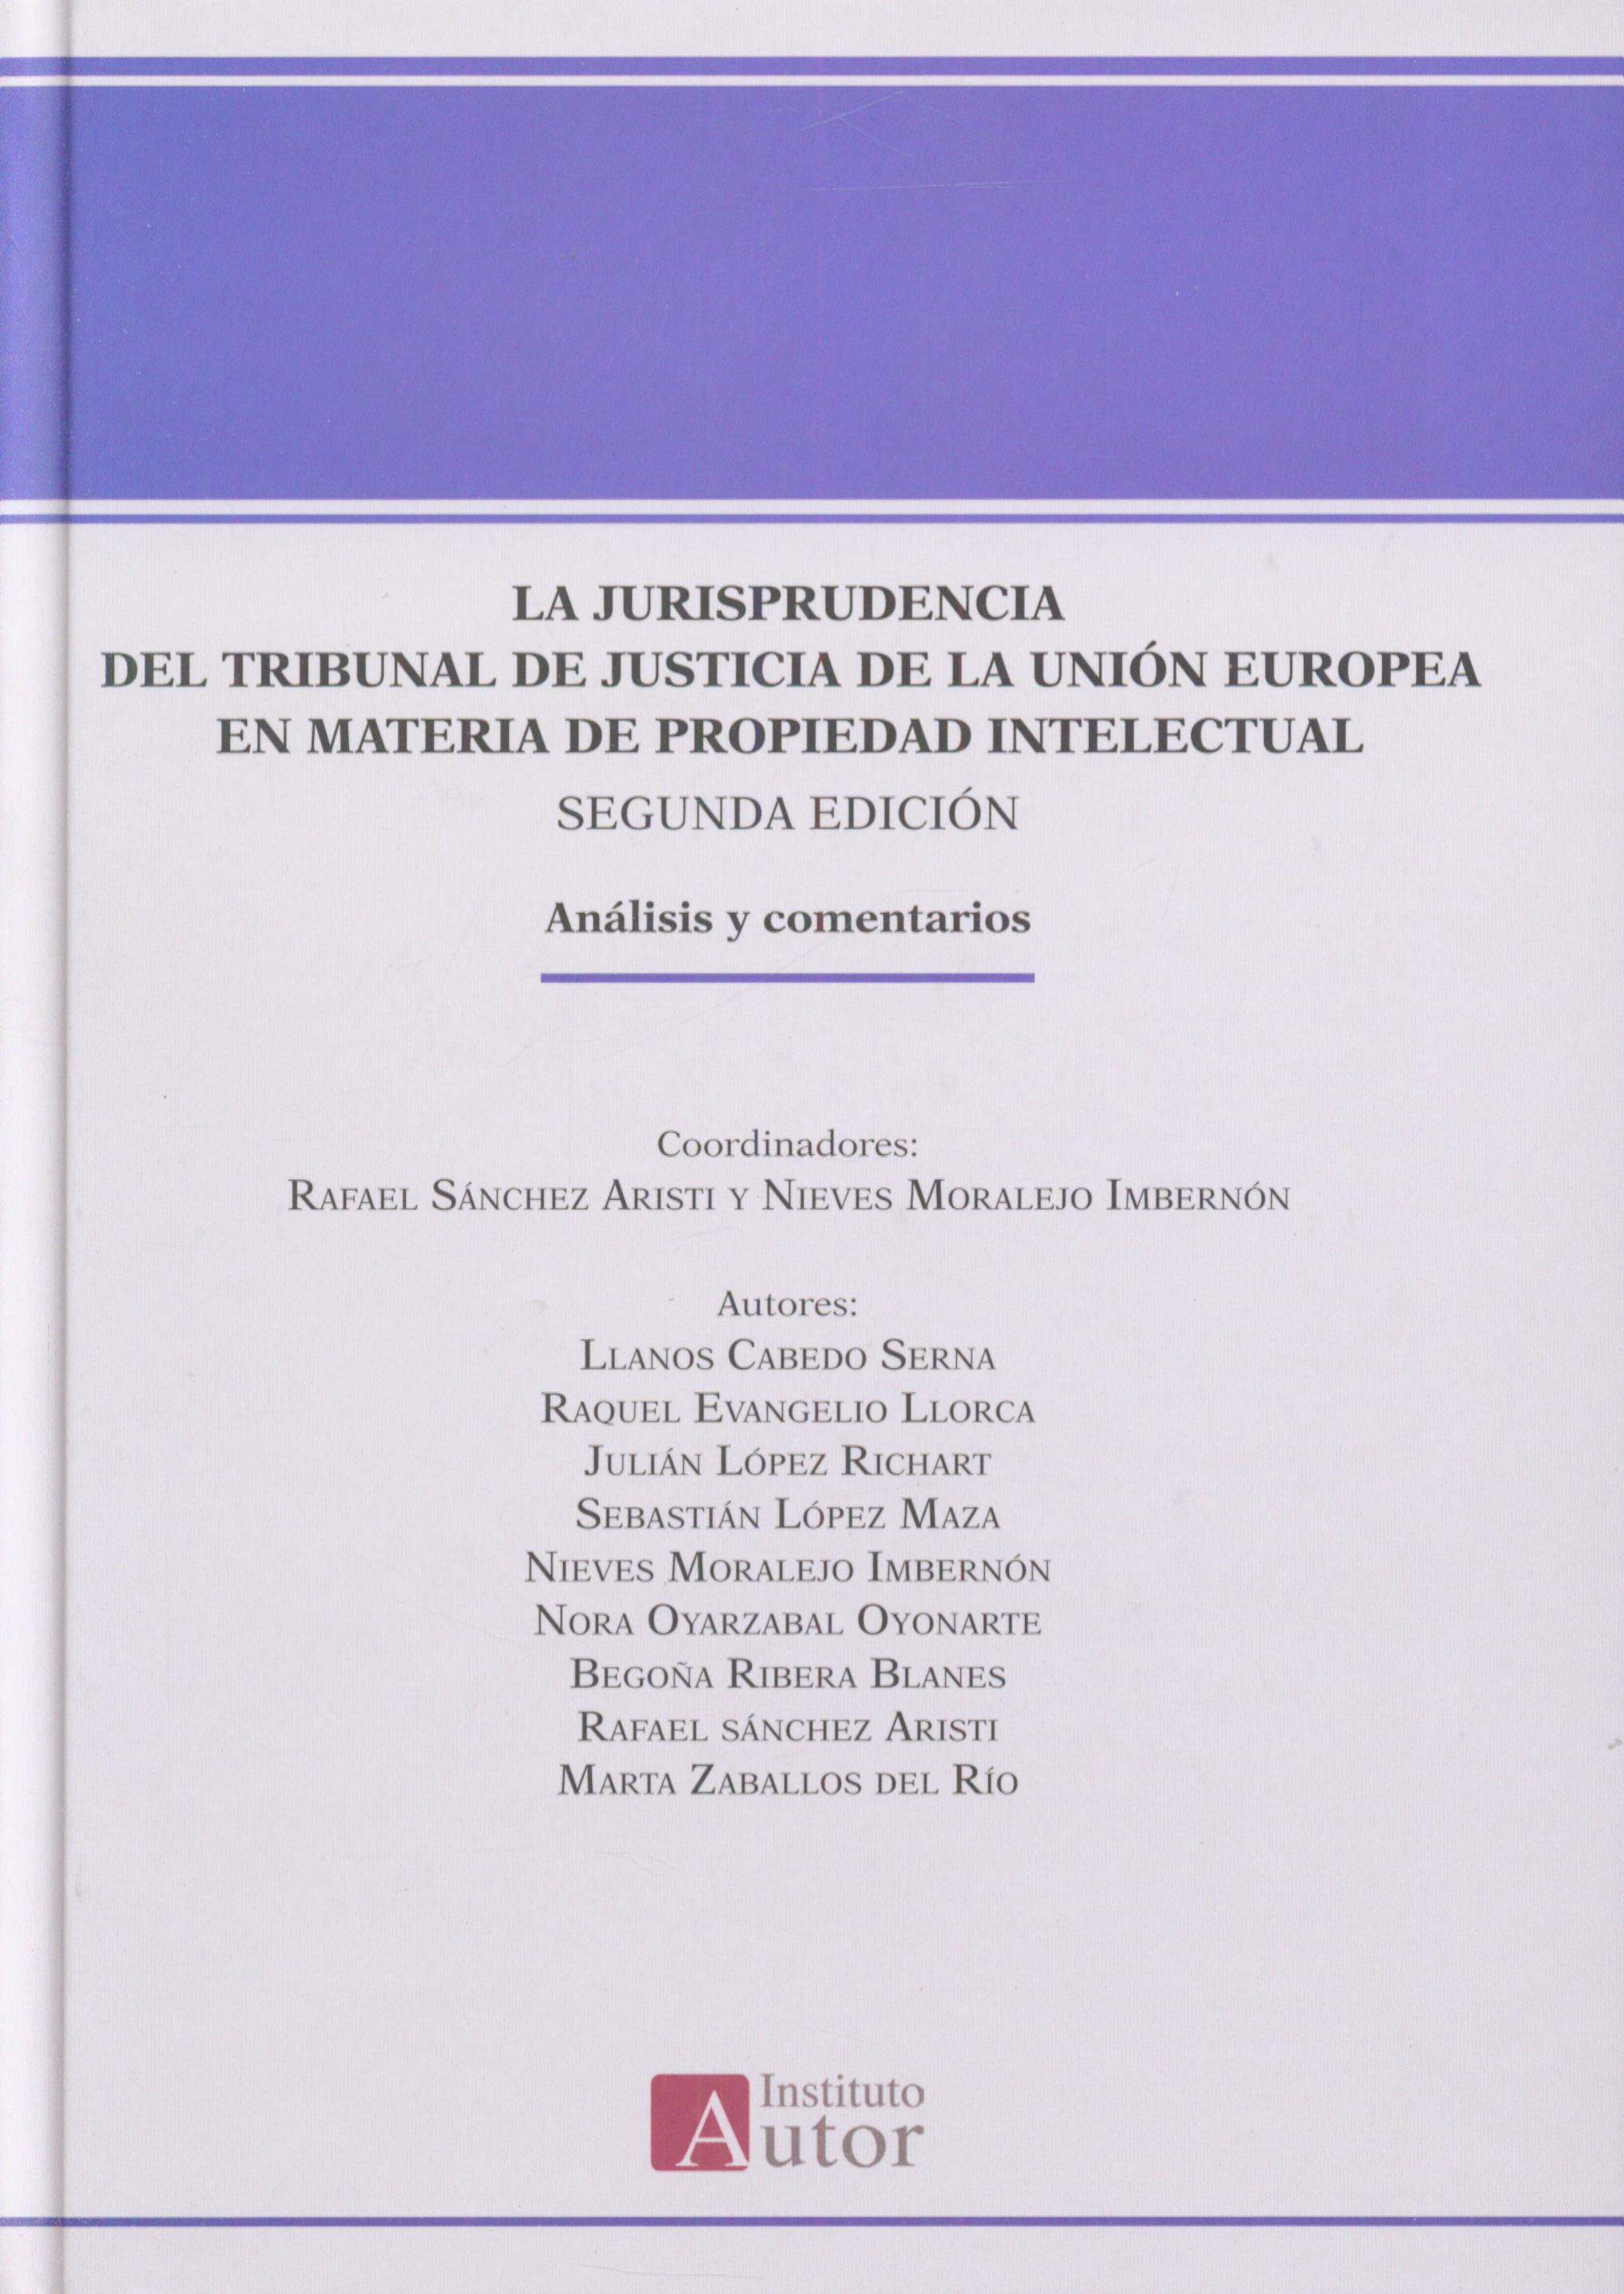 Imagen de portada del libro La jurisprudencia del Tribunal de Justicia de la Unión Europea en materia de propiedad intelectual